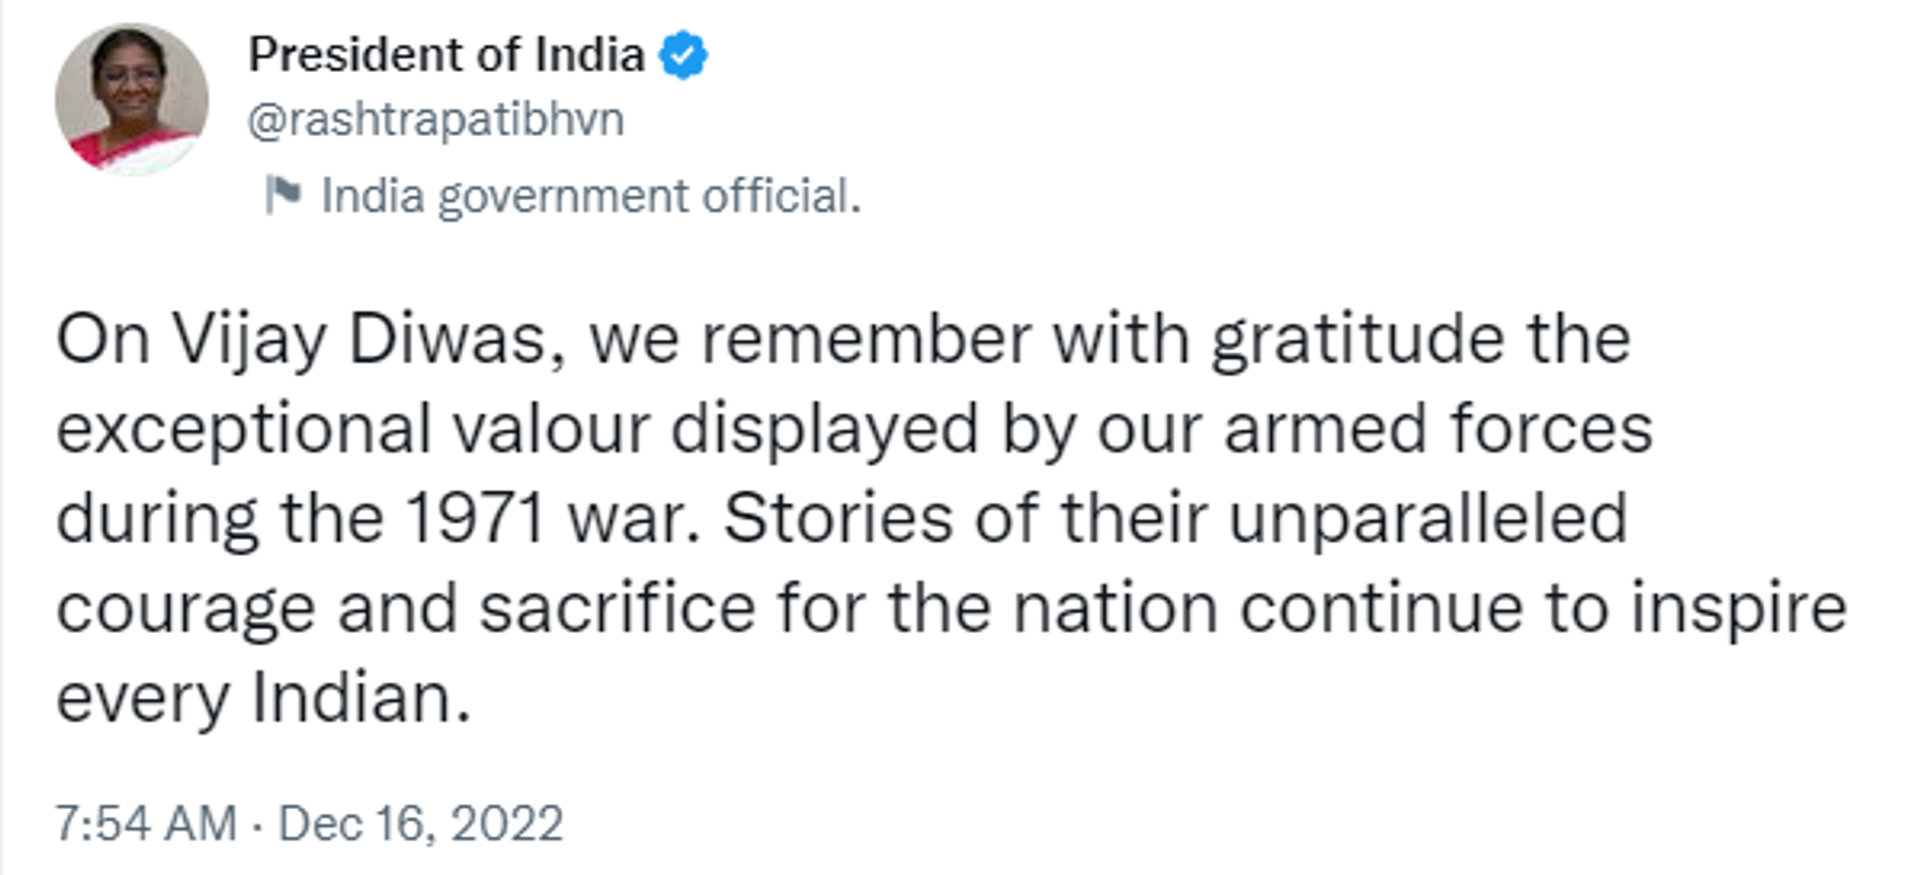 President Droupadi Murmu Remembered Fallen Heroes of 1971 Indo-Pak War - Sputnik India, 1920, 16.12.2022